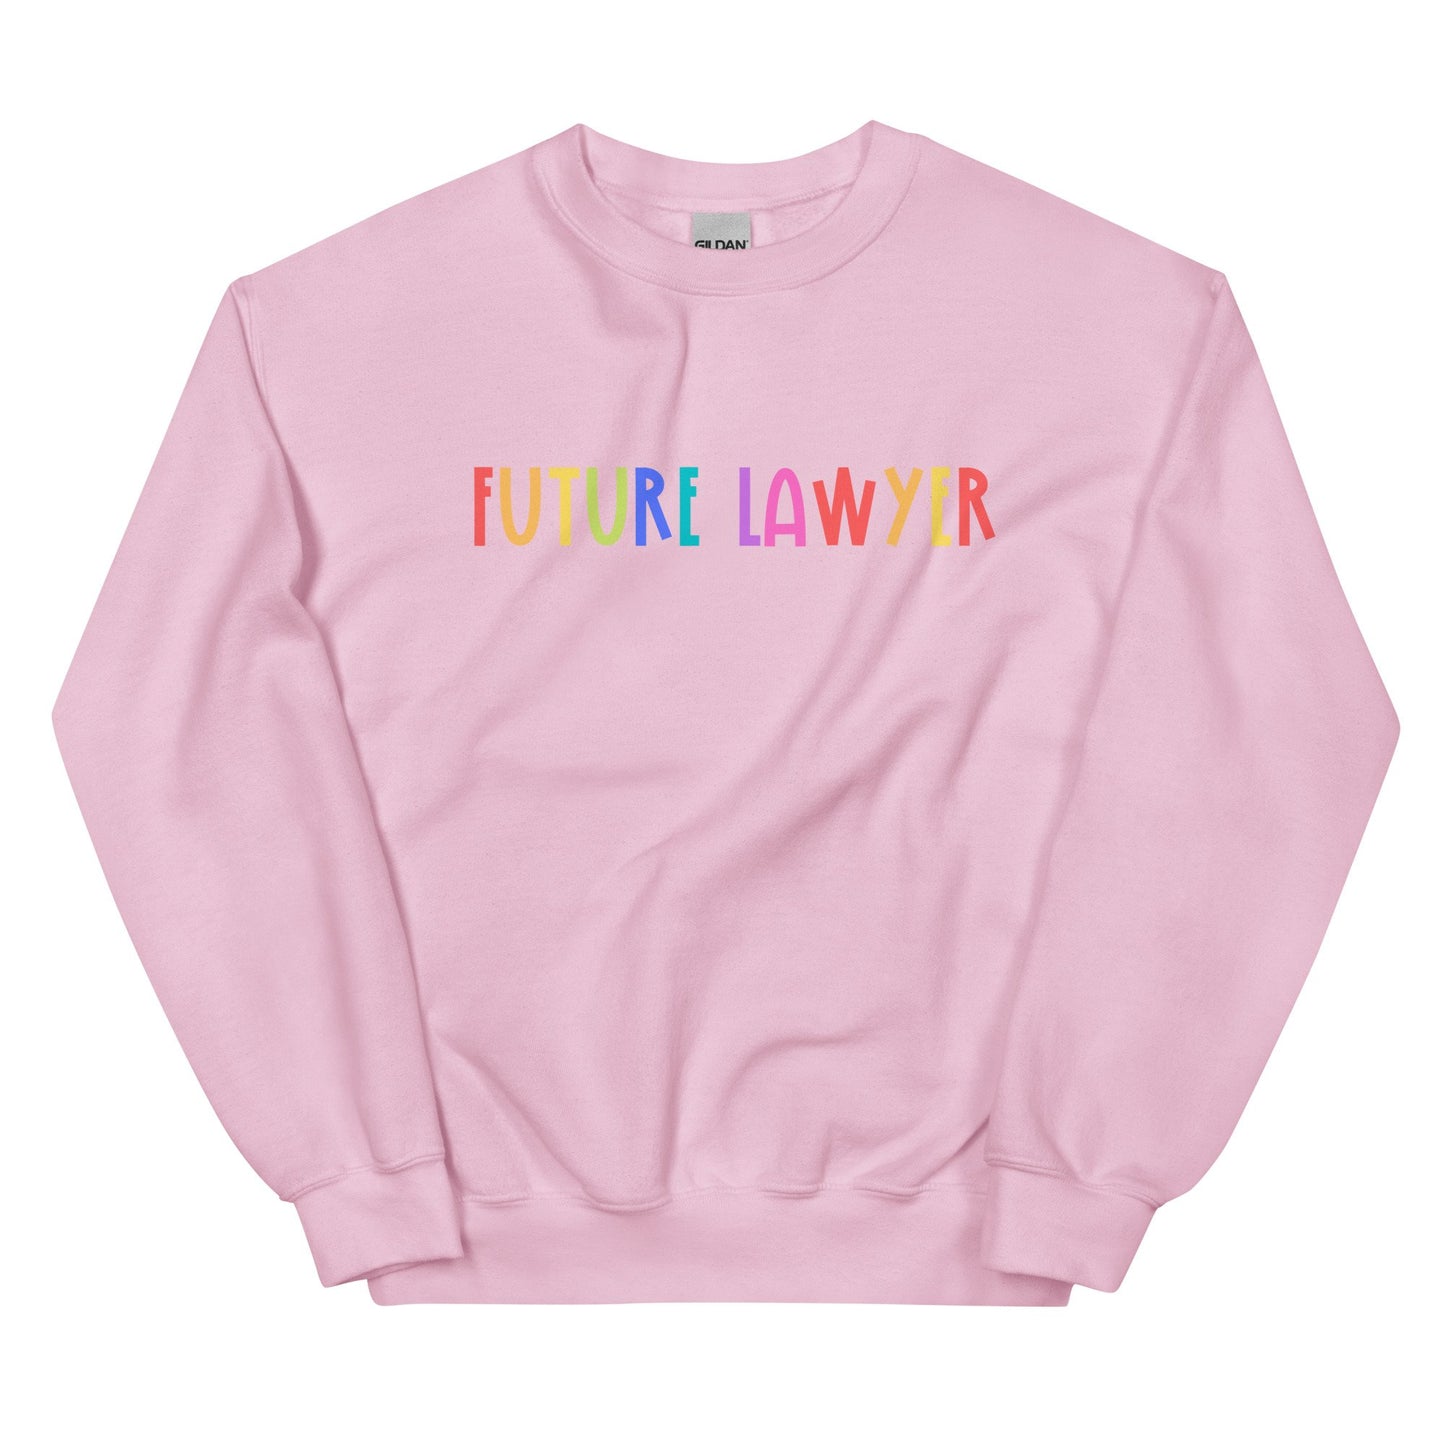 unisex-crew-neck-sweatshirt-light-pink-front-6356cfa376278.jpg